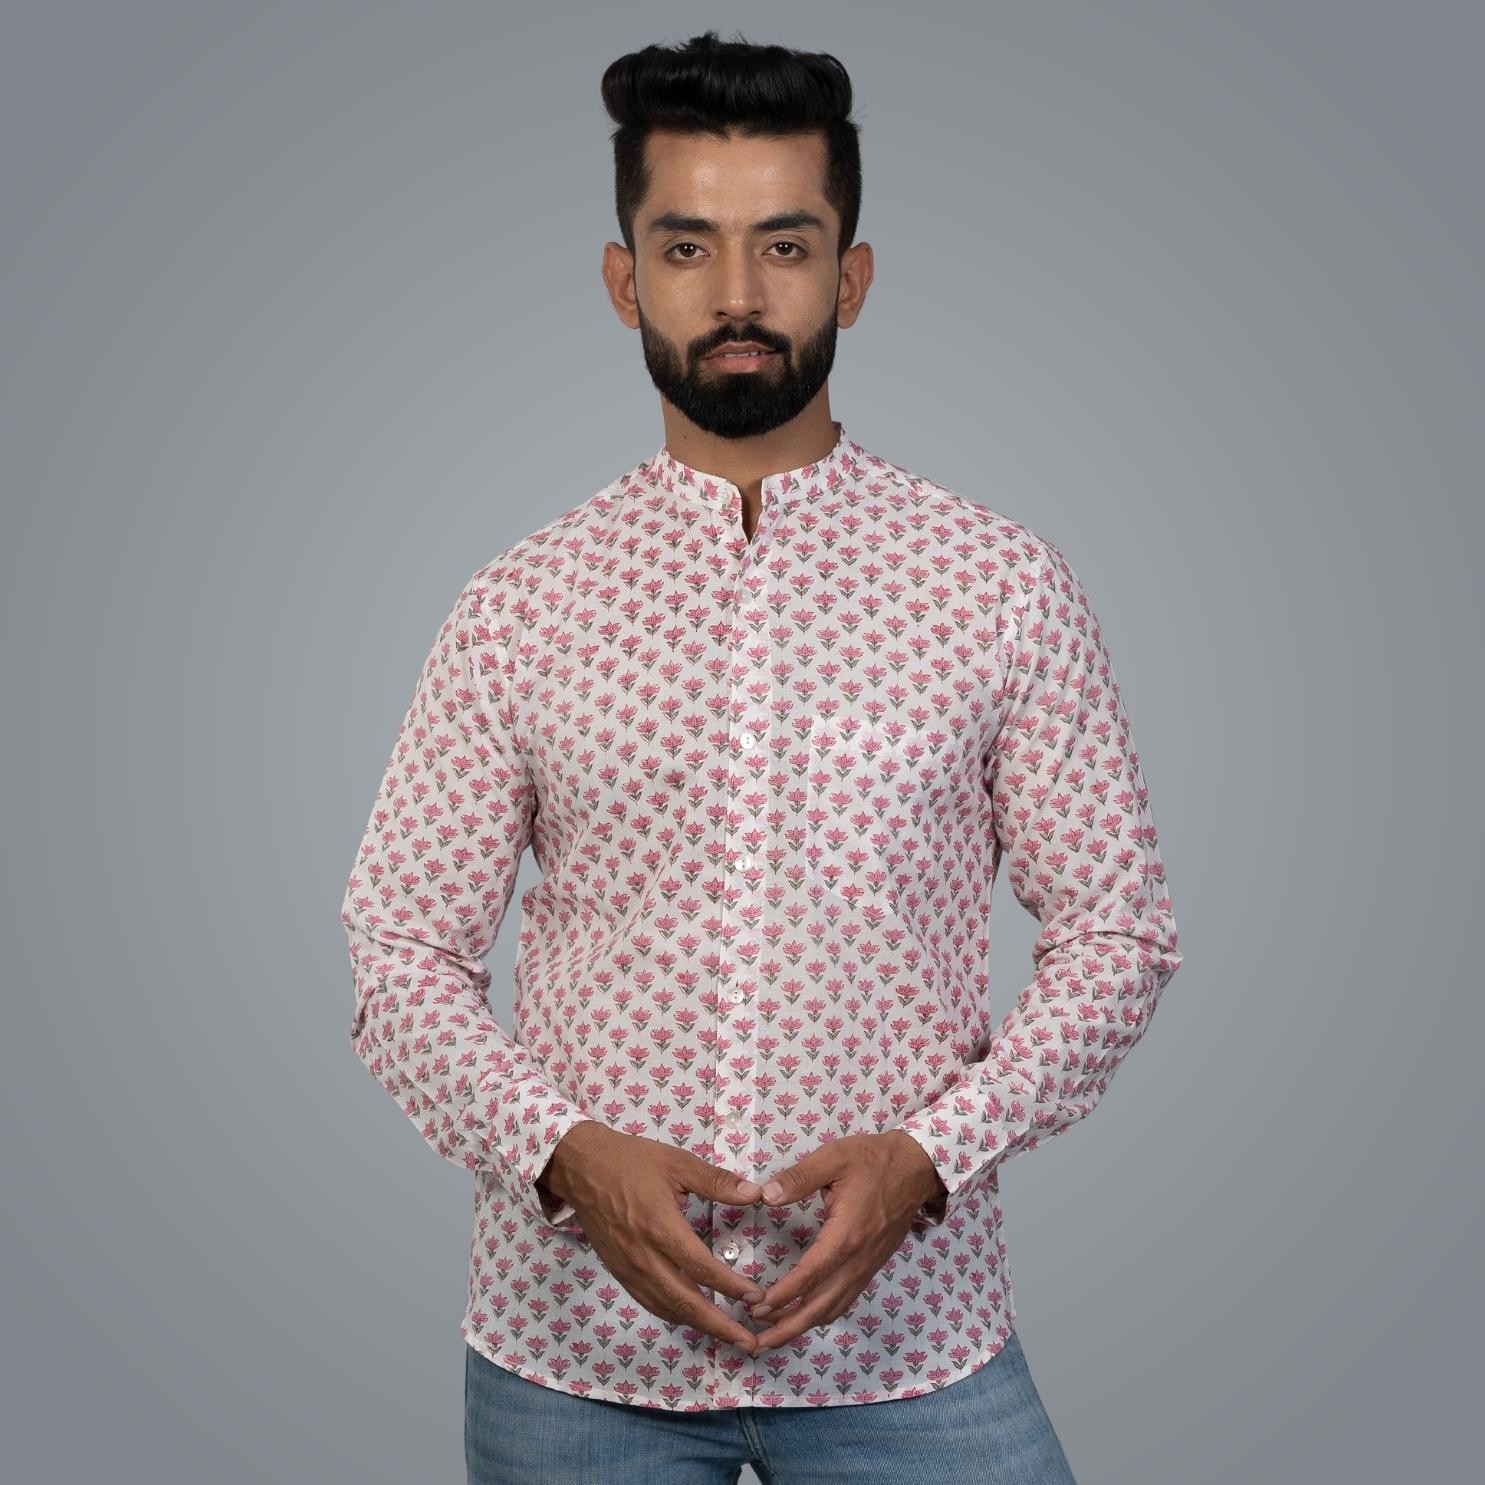 Full Sleeve Indian Hand Block Print Shirt Pink Buti Big Design Shirt 100% Cotton Fabric